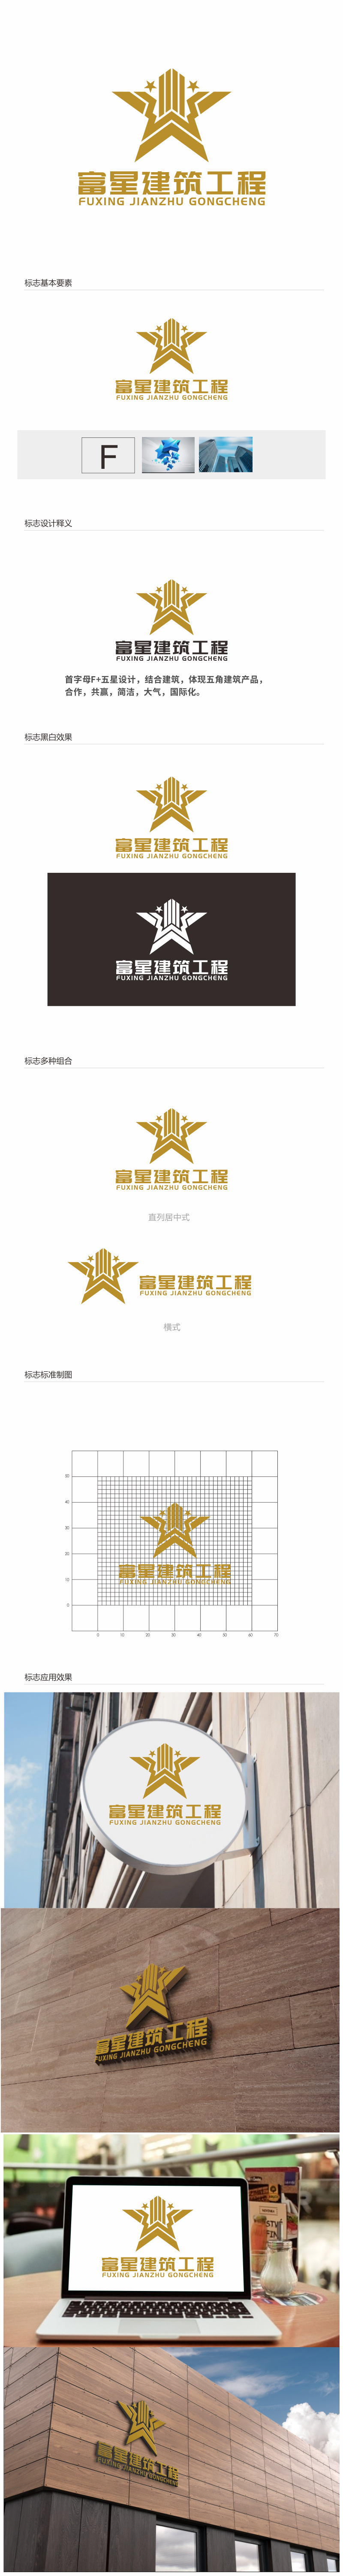 汤儒娟的天津富星建筑工程有限公司logo设计